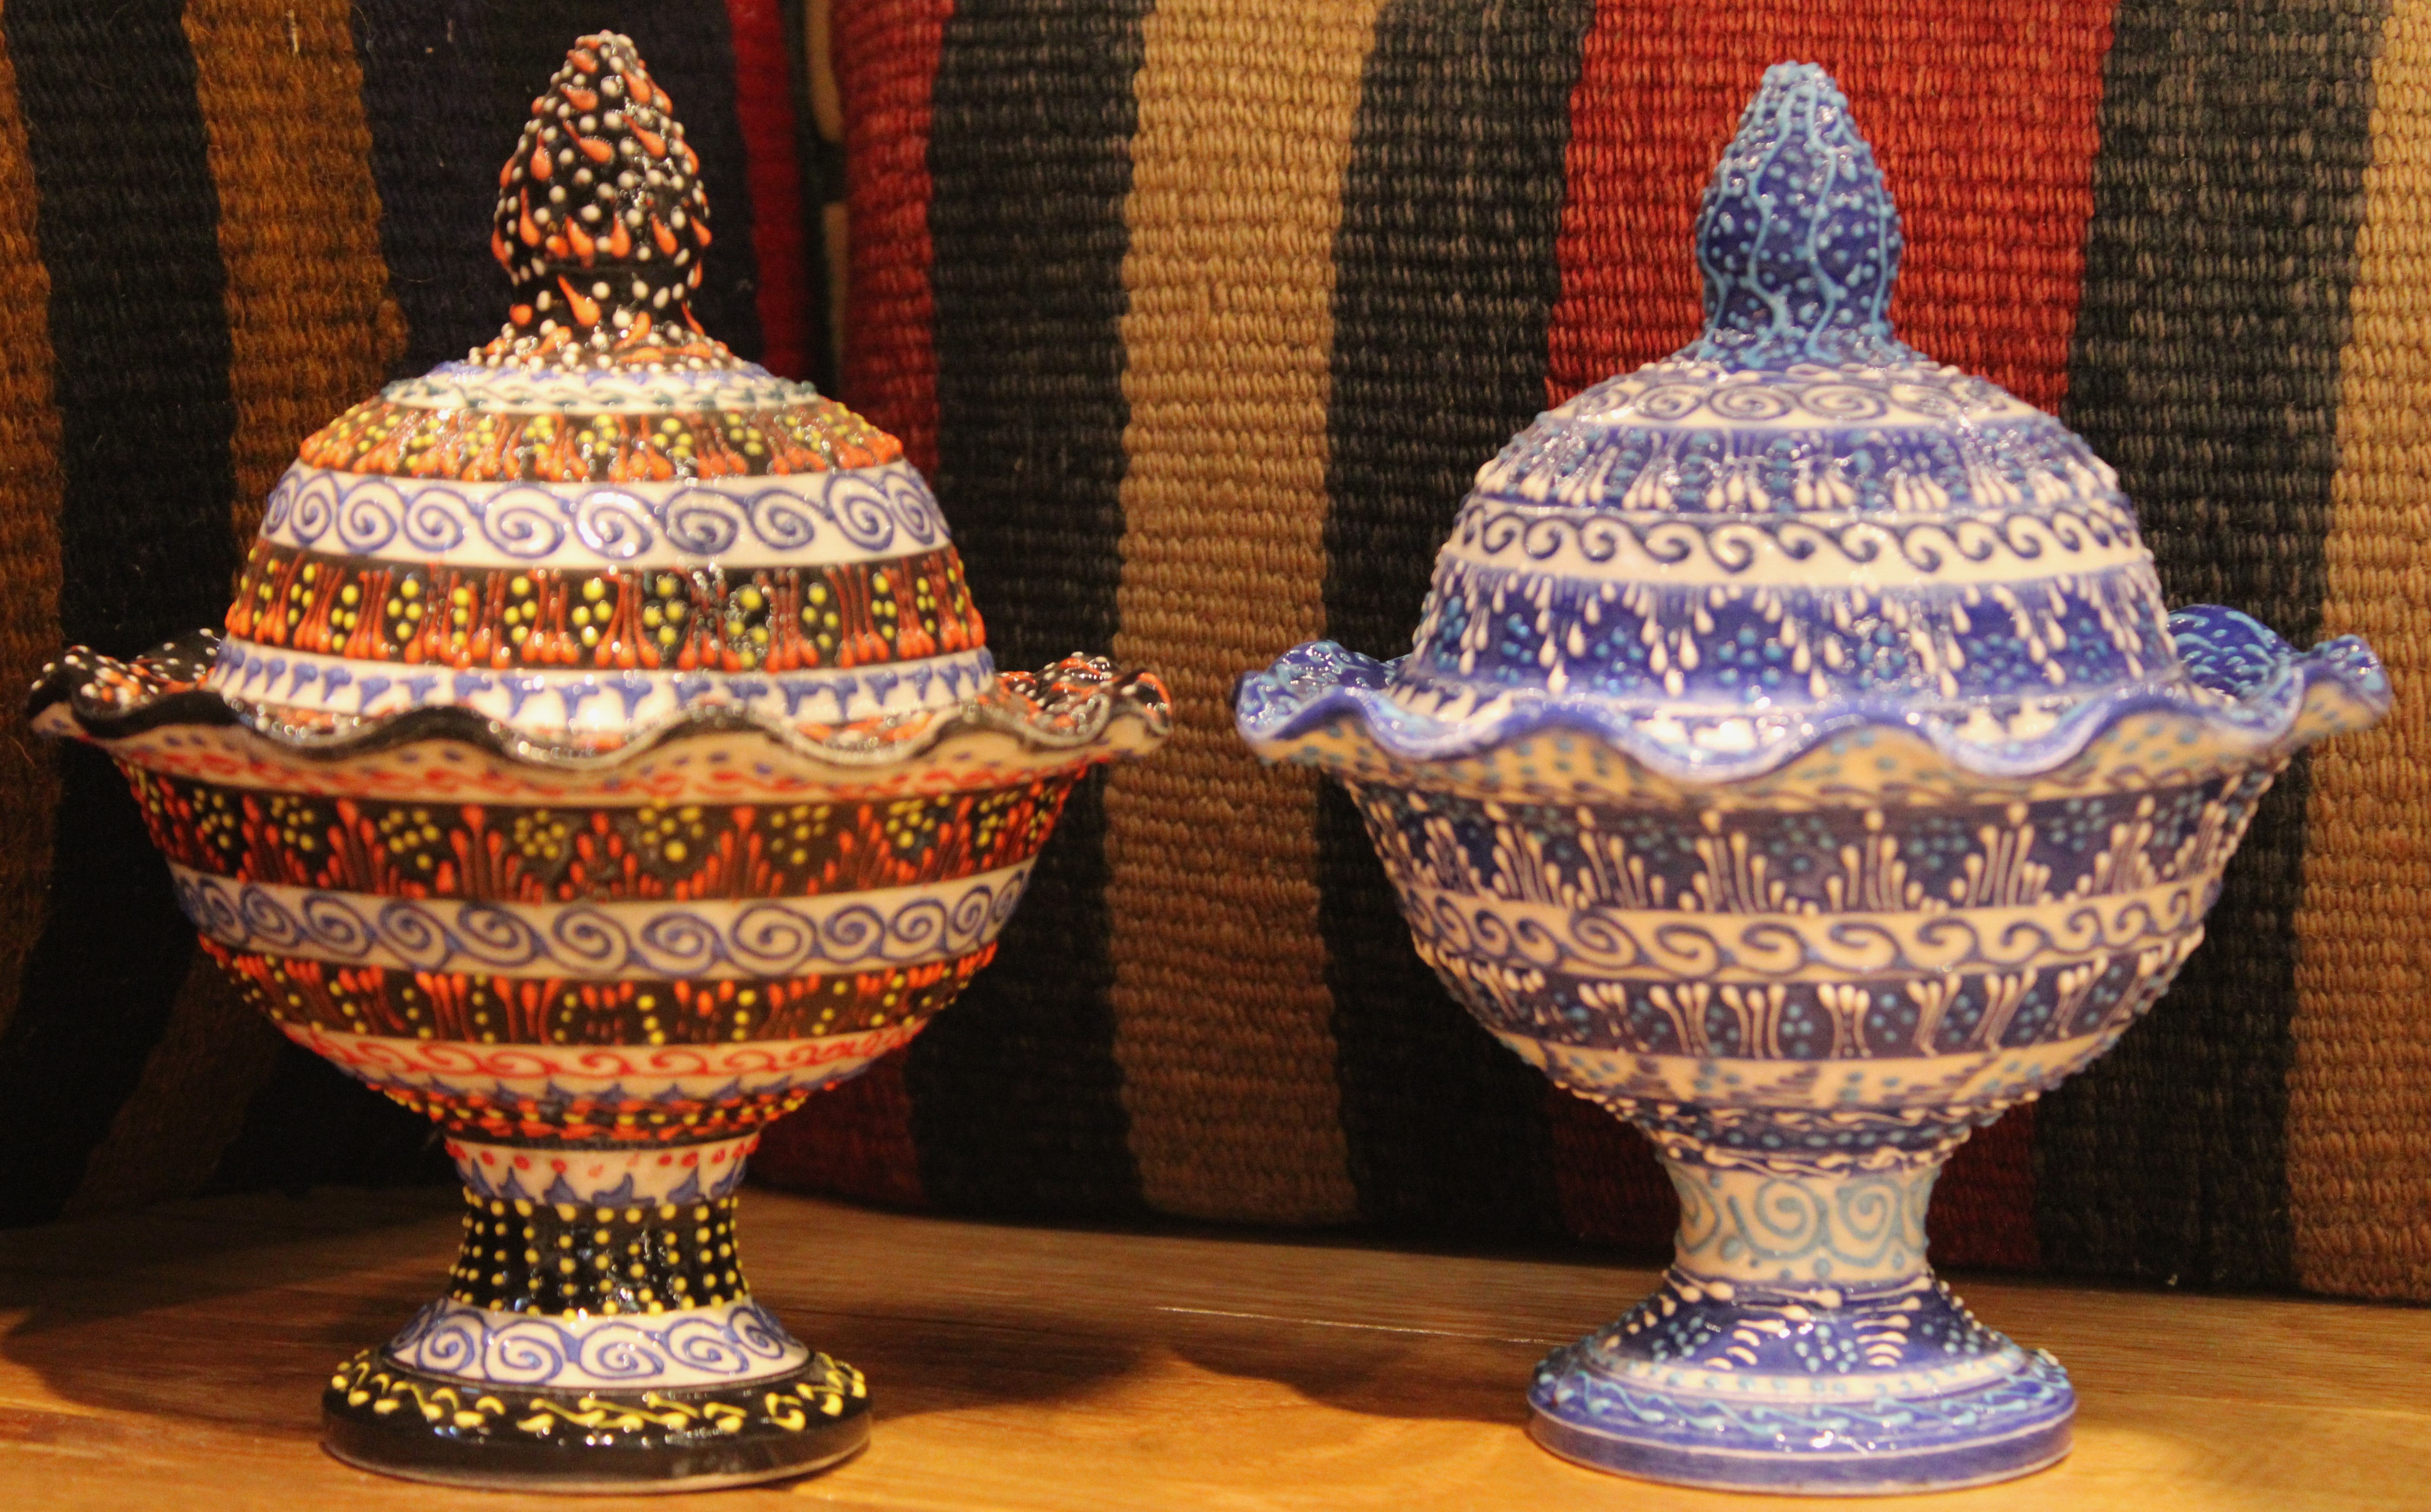 Mesmerise Ceramic Collection